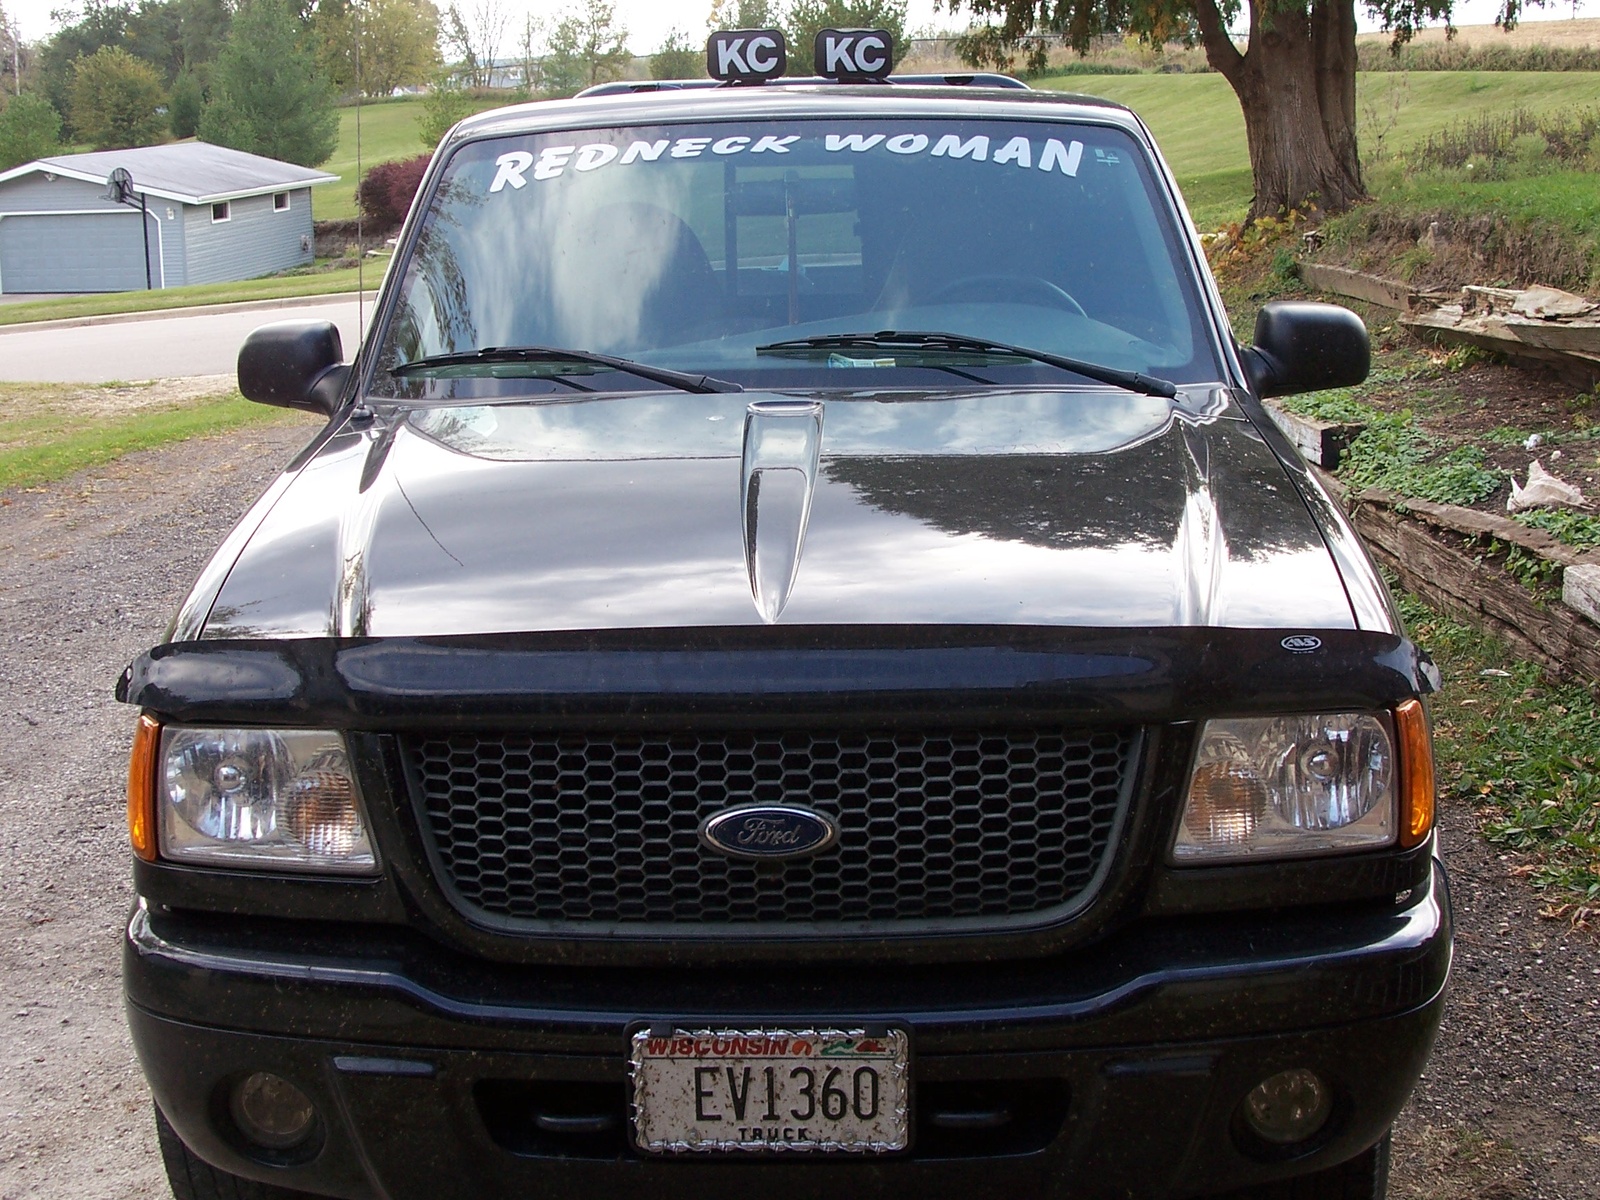 2001 Ford ranger extended cab wheelbase #5